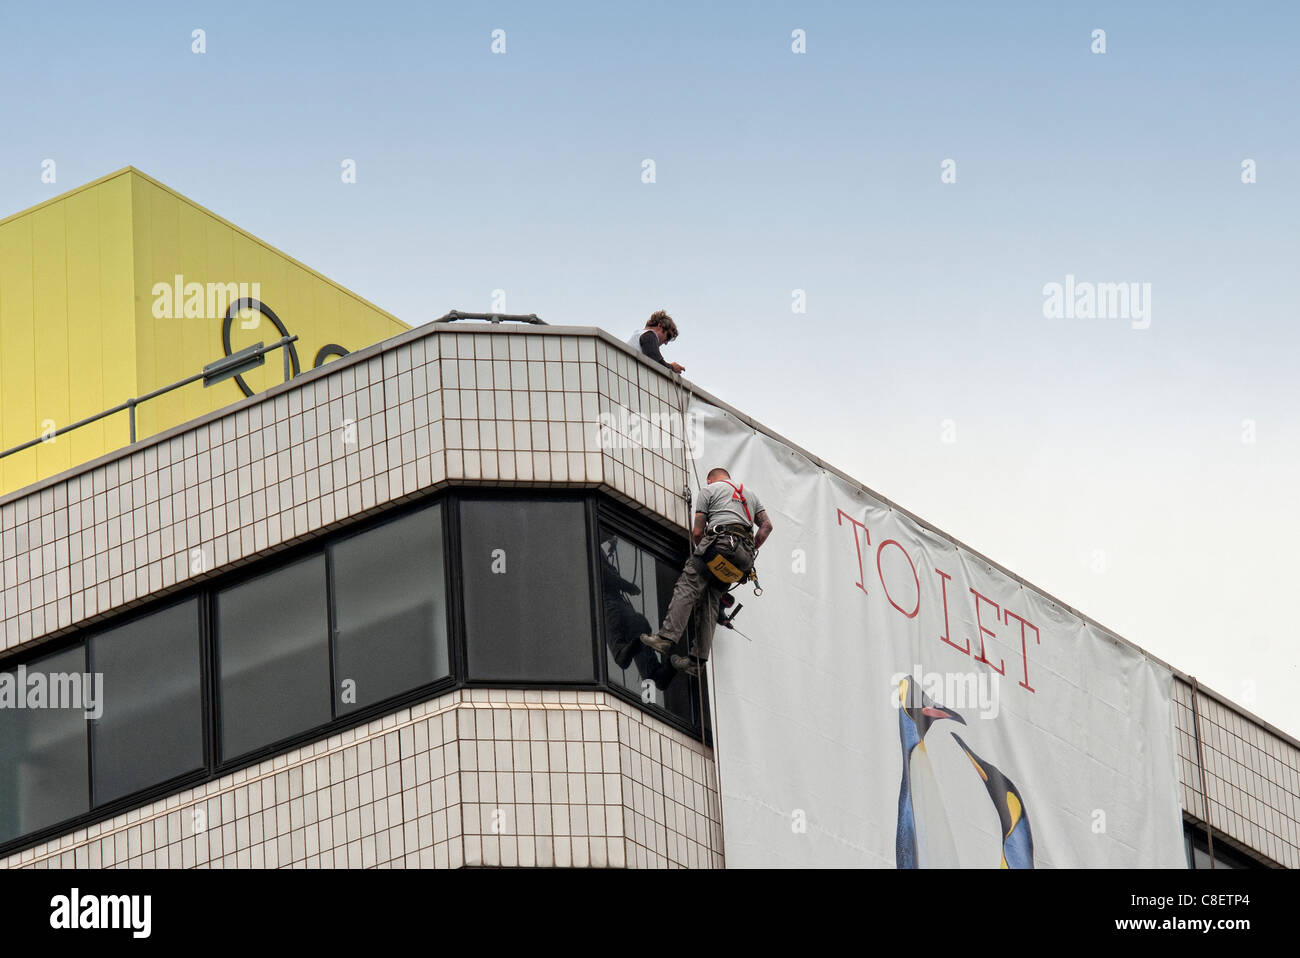 Uomini al lavoro sulla parte superiore di un edificio appeso un banner pubblicitario Foto Stock